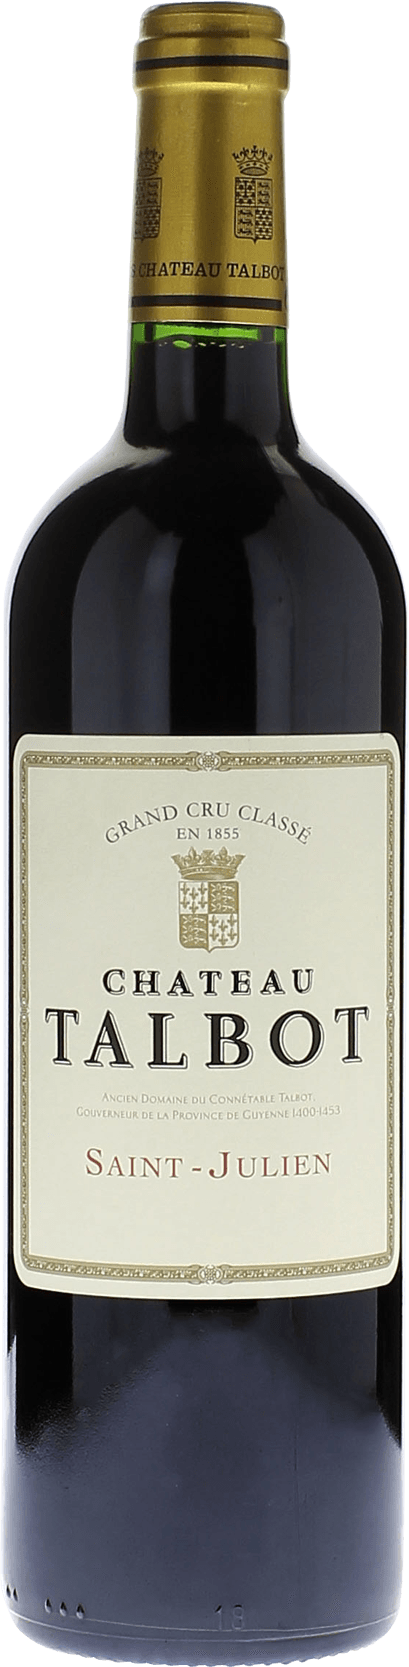 Talbot 2016 4me Grand cru class Saint-Julien, Bordeaux rouge